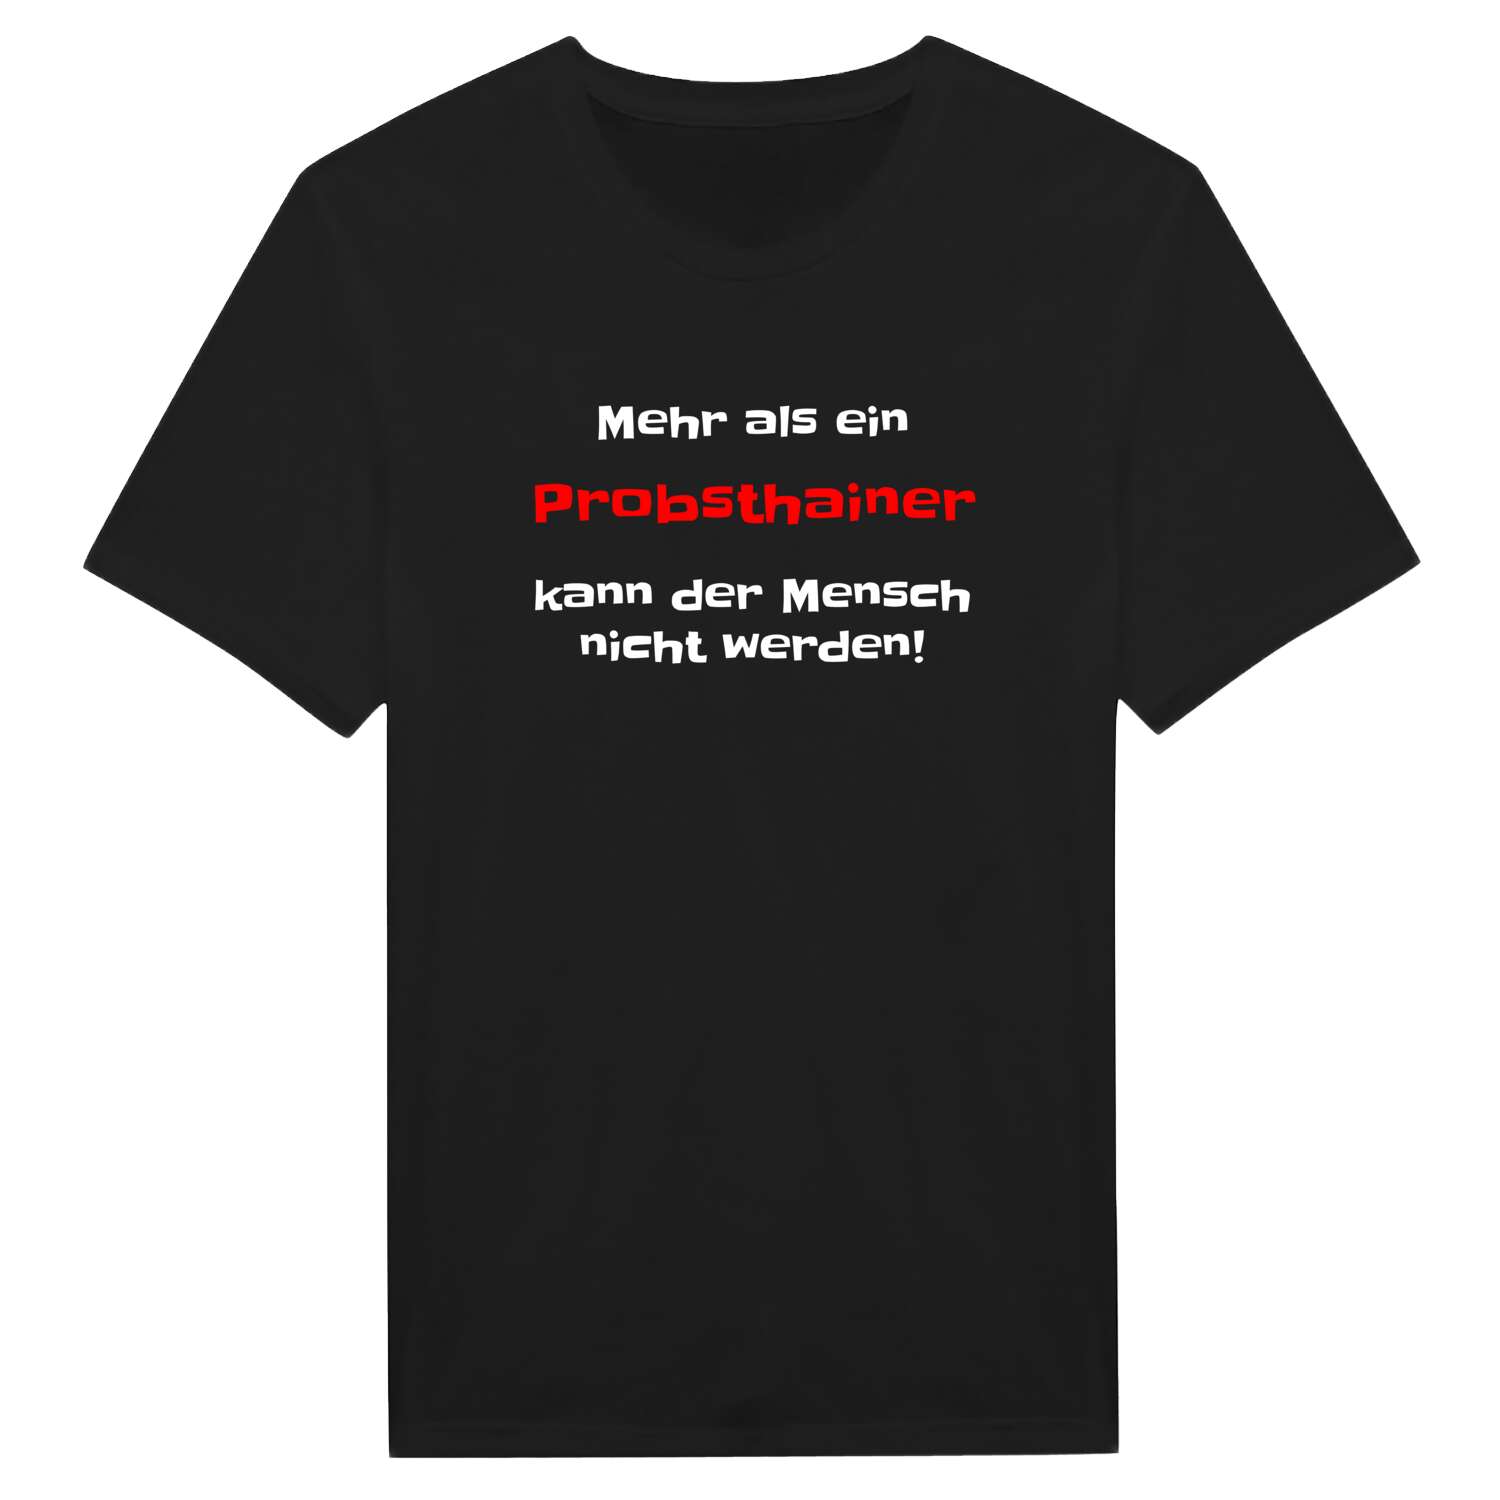 Probsthain T-Shirt »Mehr als ein«